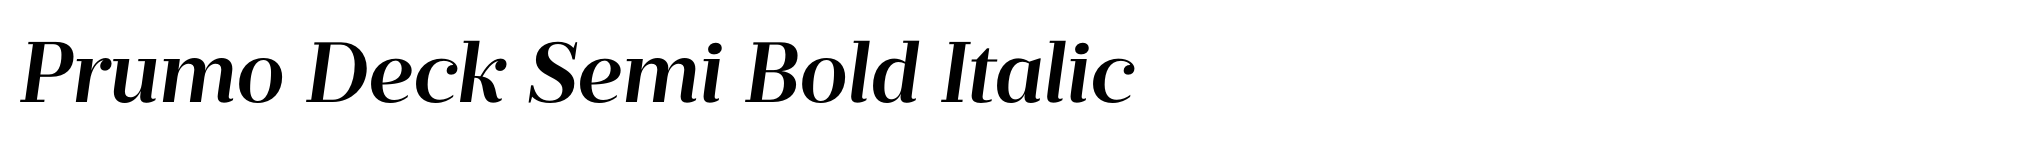 Prumo Deck Semi Bold Italic image